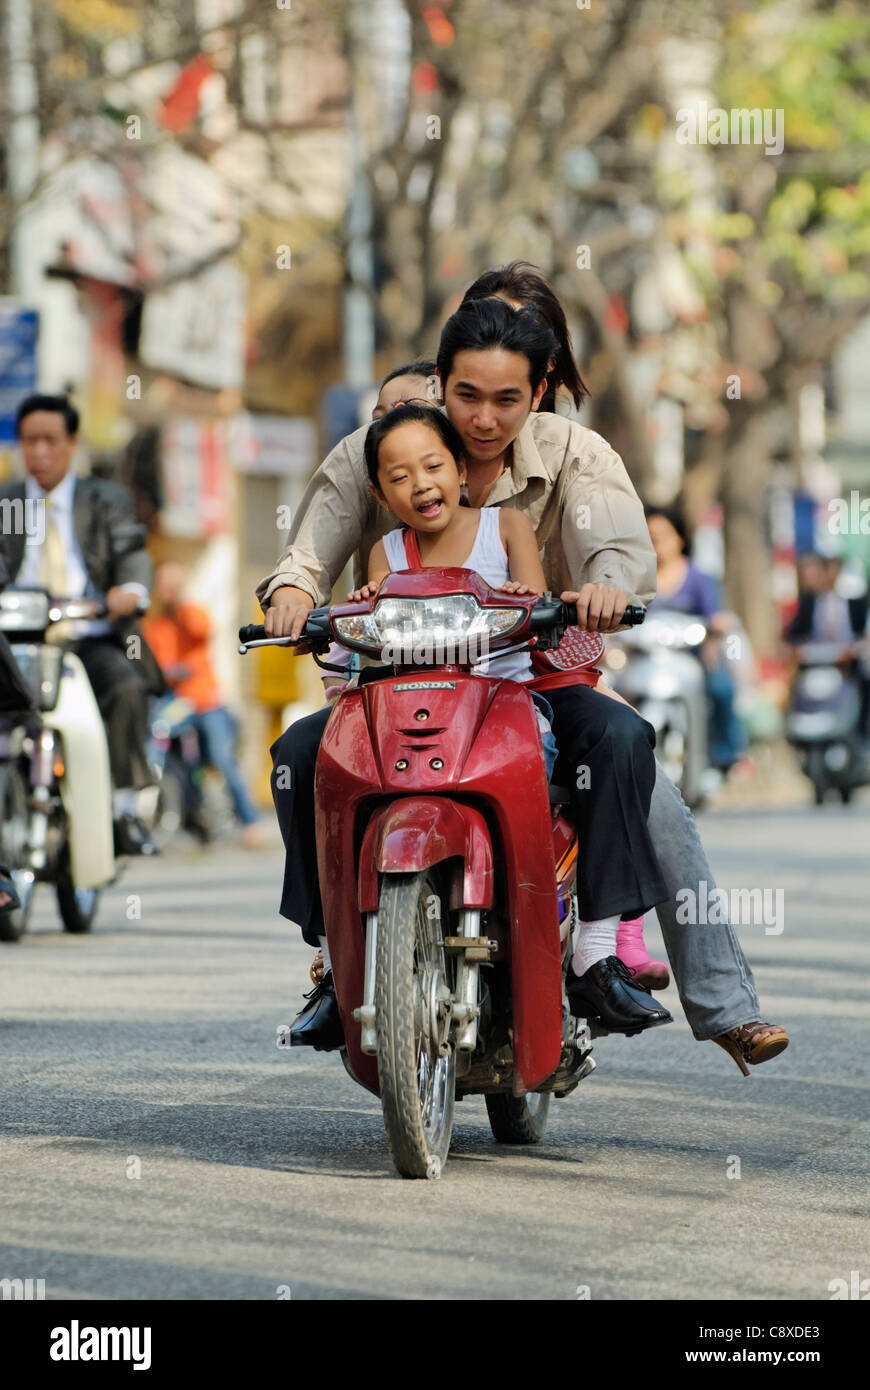 Asia, Vietnam, Hanoi. Hanoi old quarter. Vietnamese family riding on a small motorbike through Hanoi.... Stock Photo